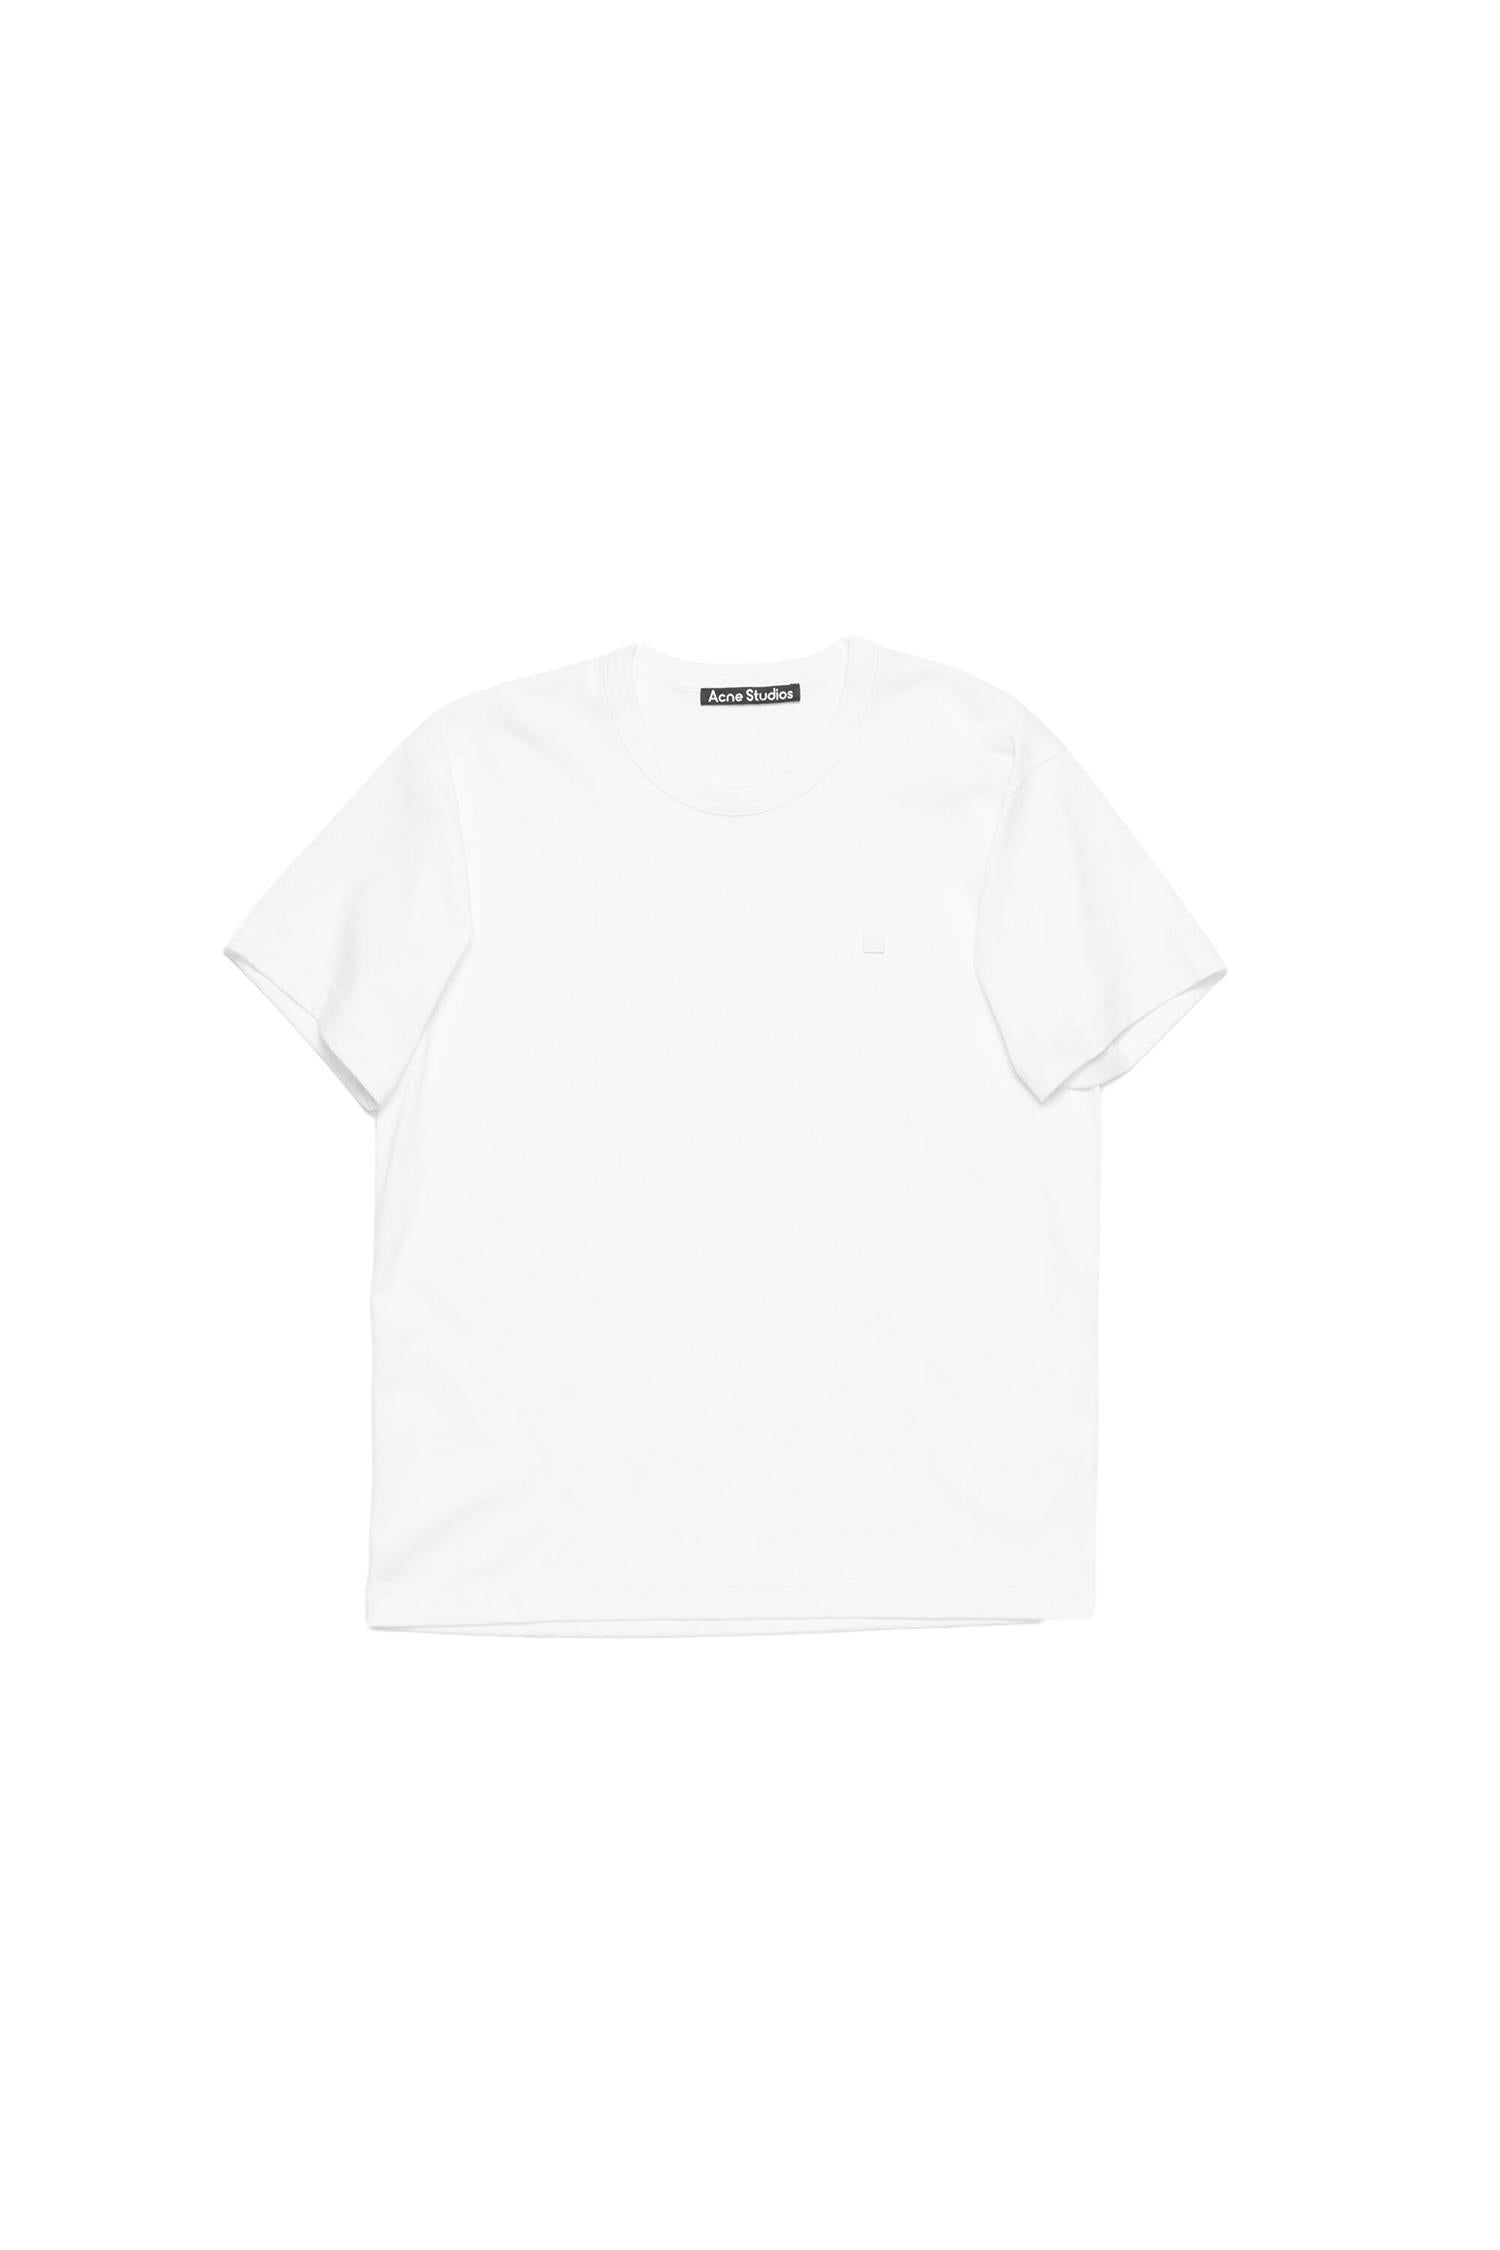 Acne Mini Face Logo T-shirt T-shirt Hvit - modostore.no